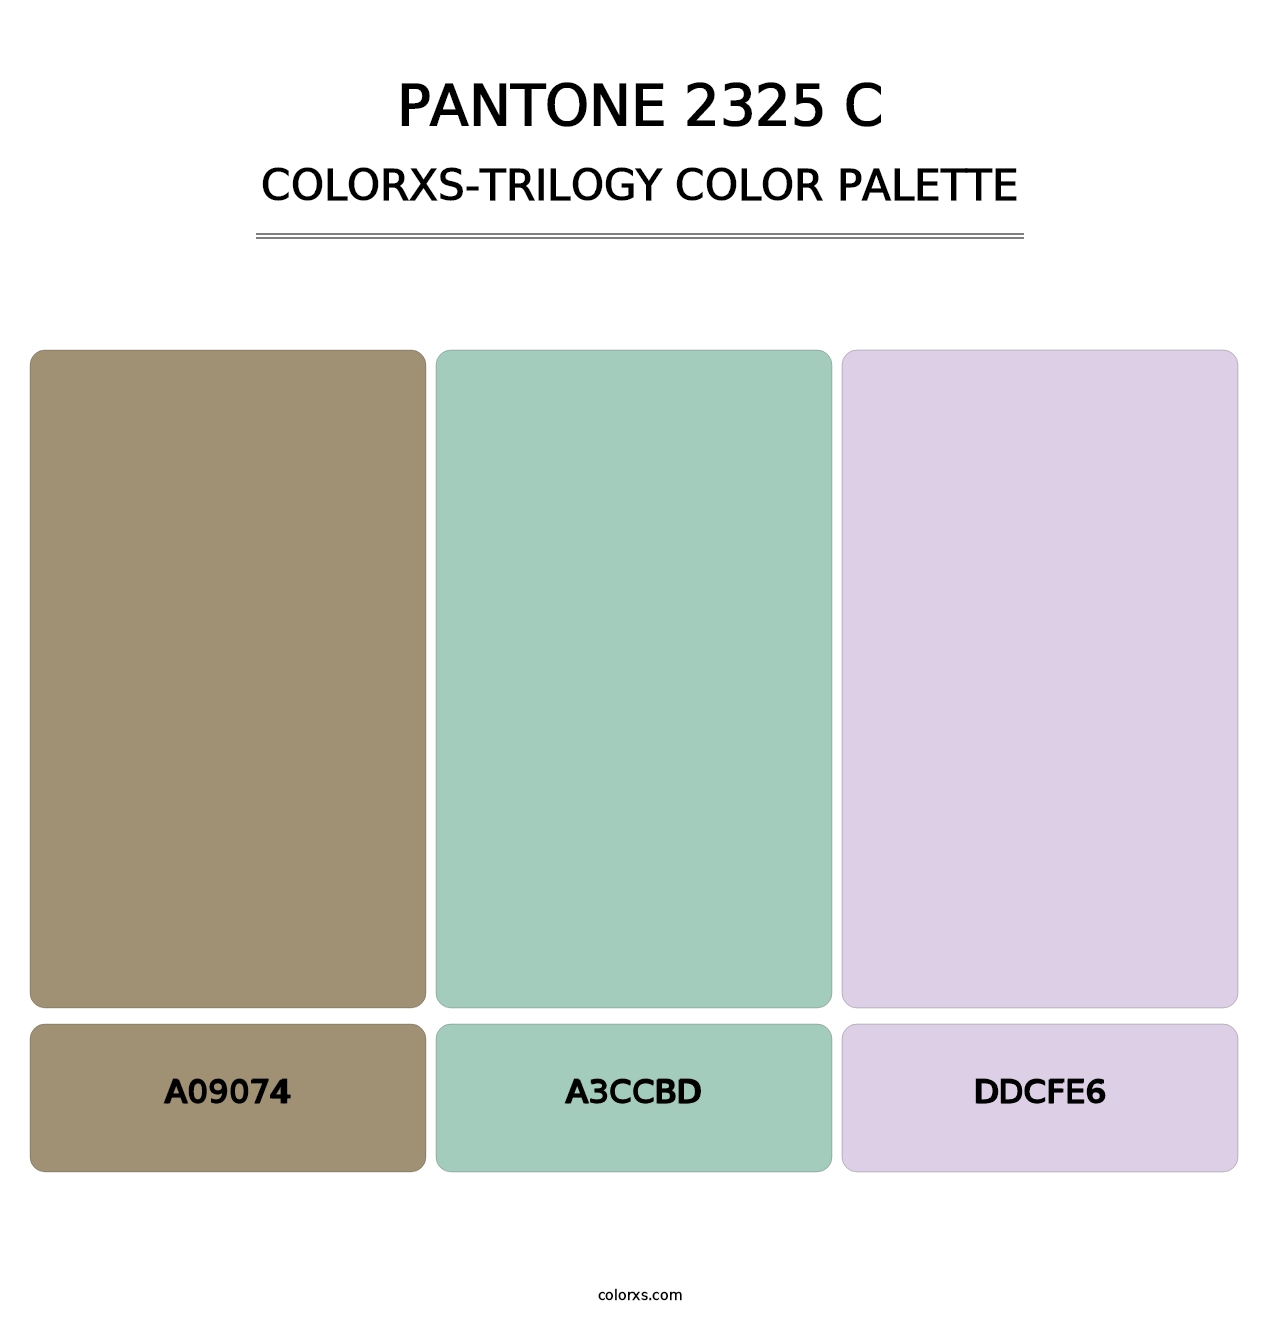 PANTONE 2325 C - Colorxs Trilogy Palette